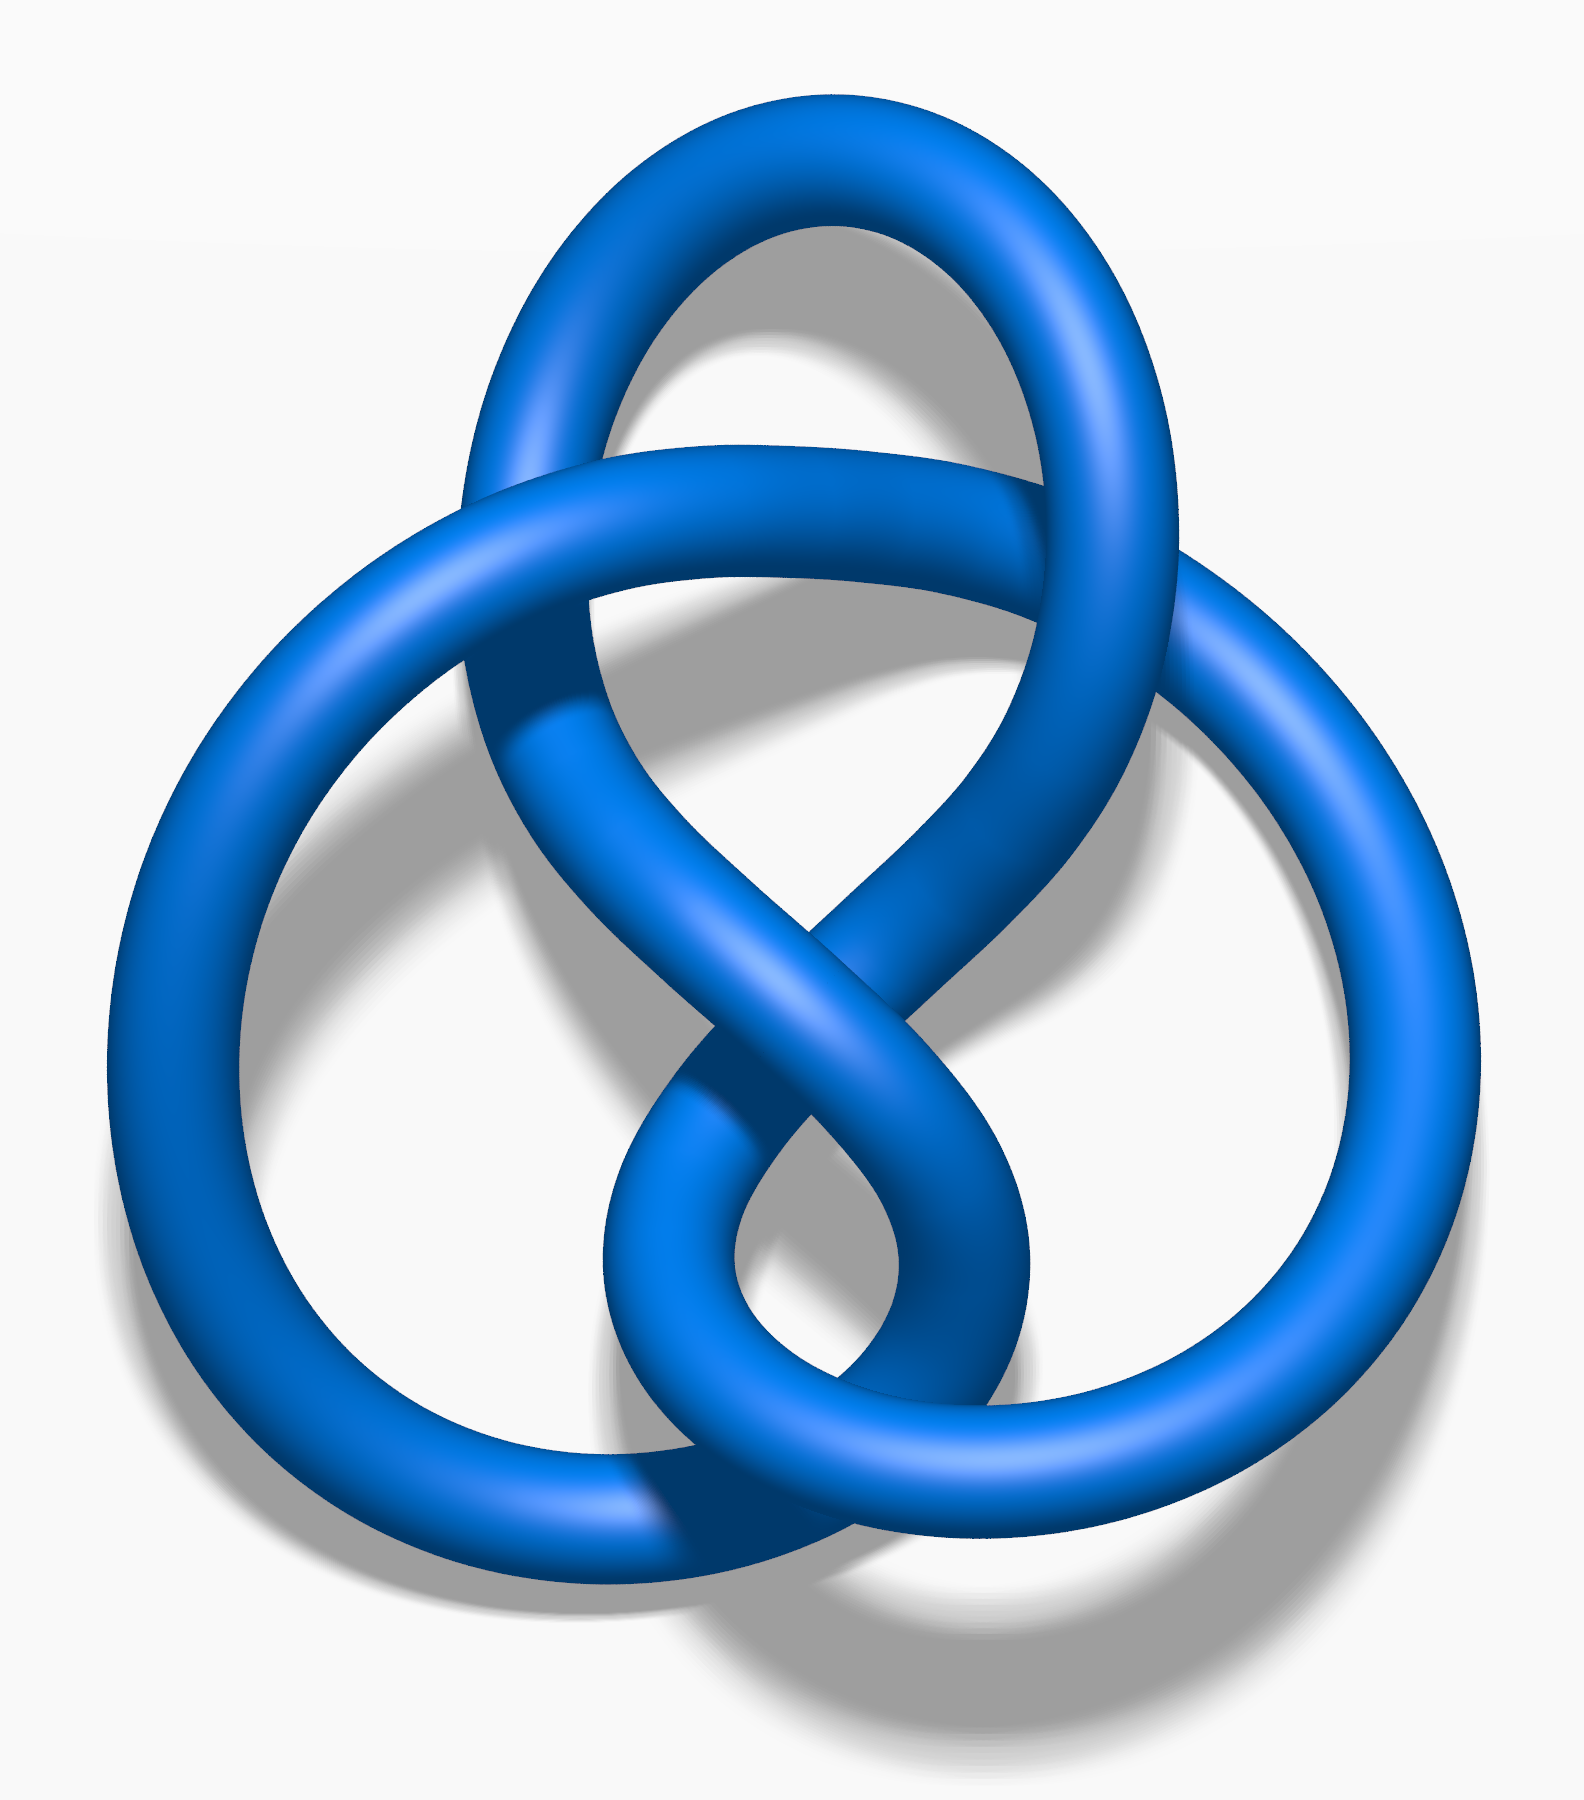 Figure-eight knot (mathematics) - Wikipedia